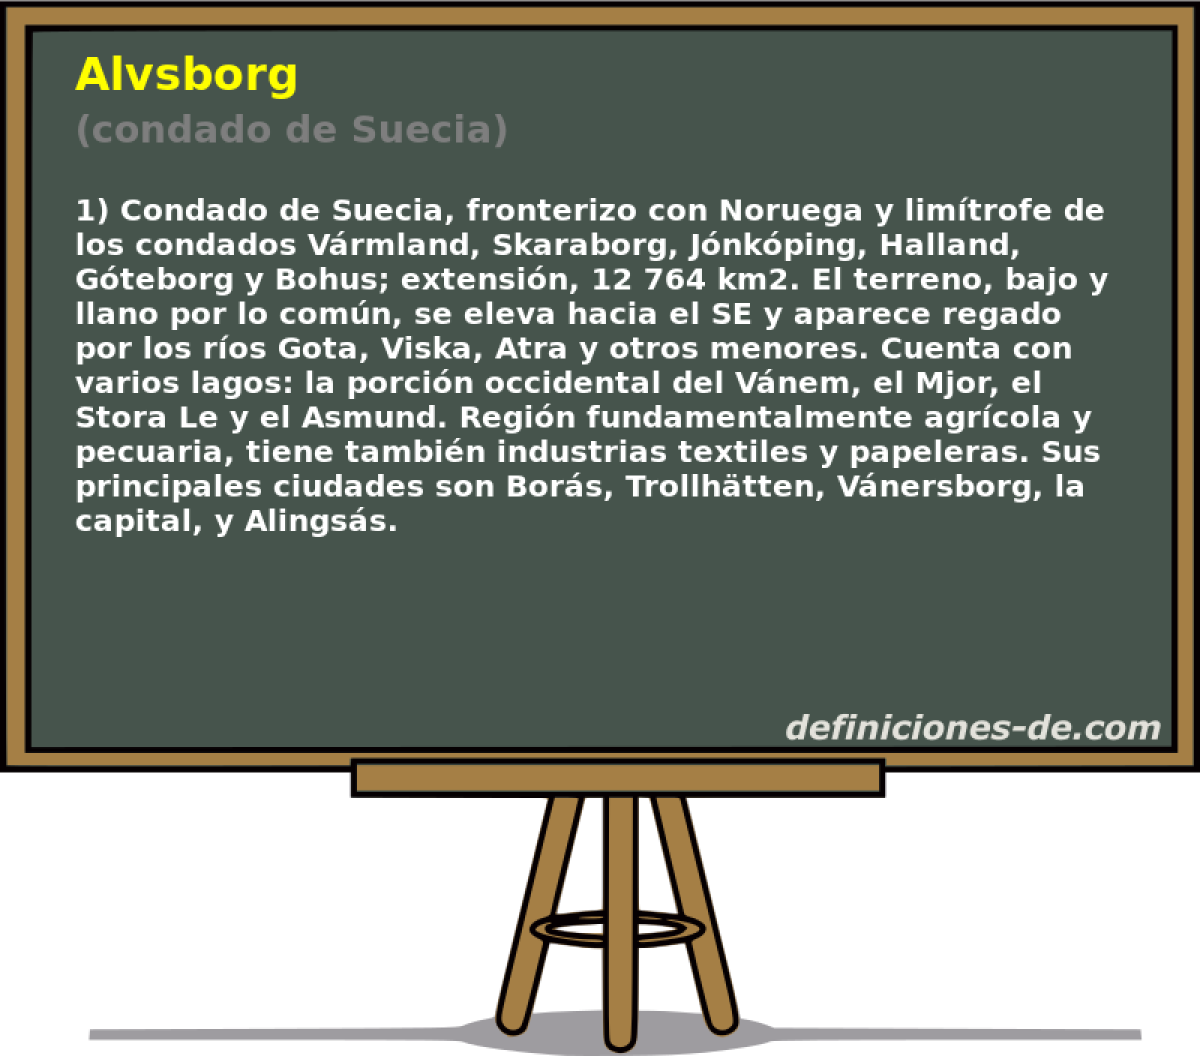 Alvsborg (condado de Suecia)